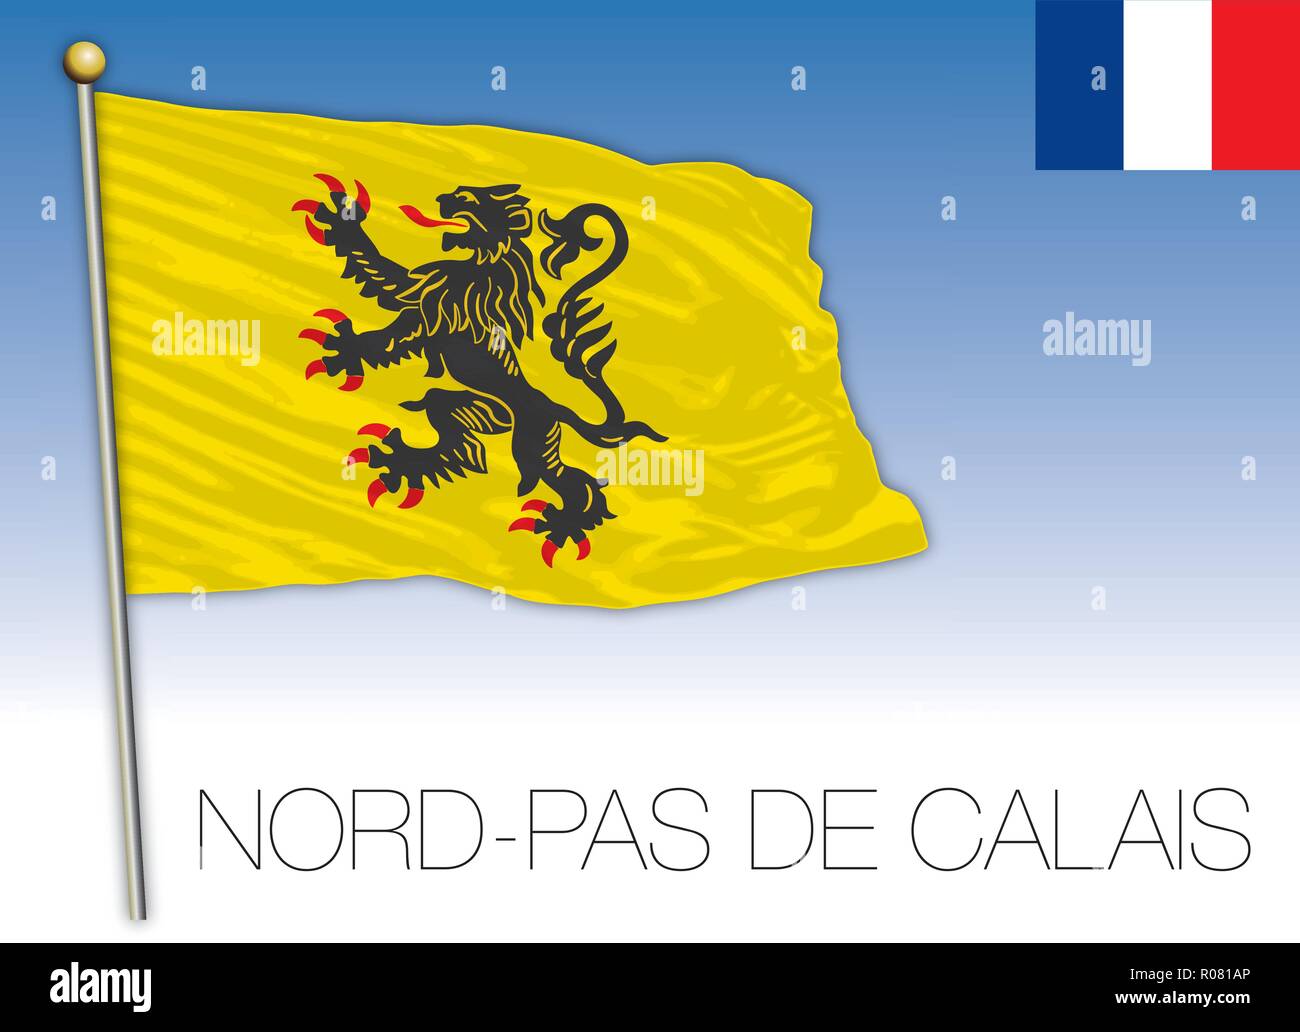 Nord Pas de Calais regional flag, France, vector illustration Stock Vector